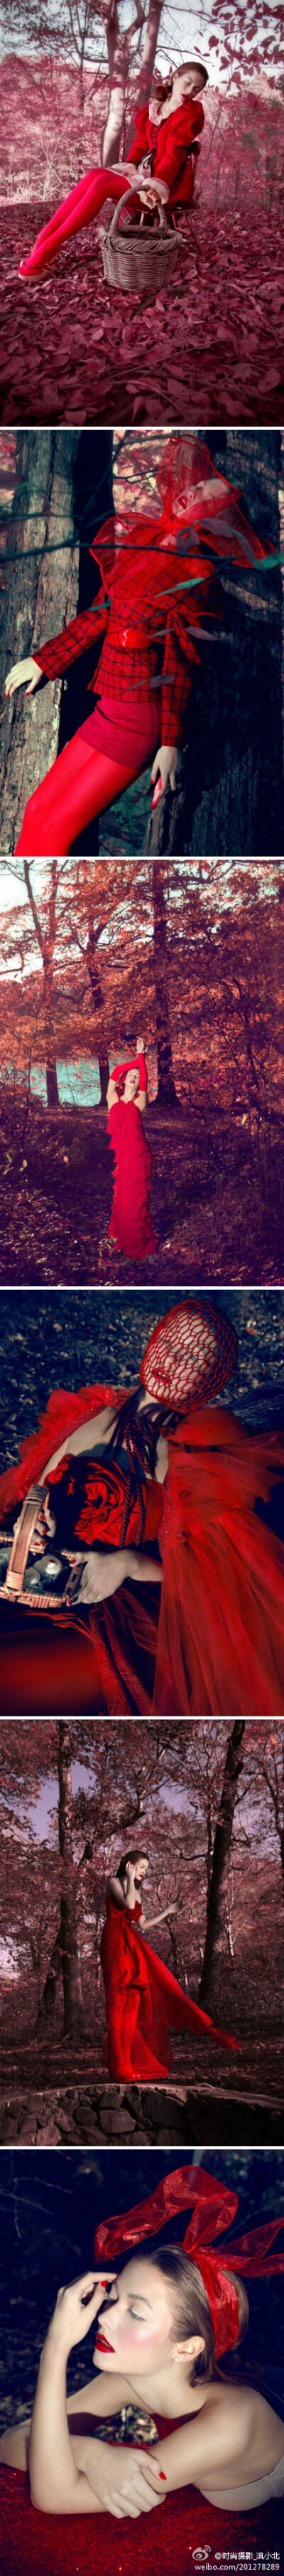 在丛林中等待——美国纽约Raymond Gee摄影工作室拍摄的一组森林红色系人物摄影作品